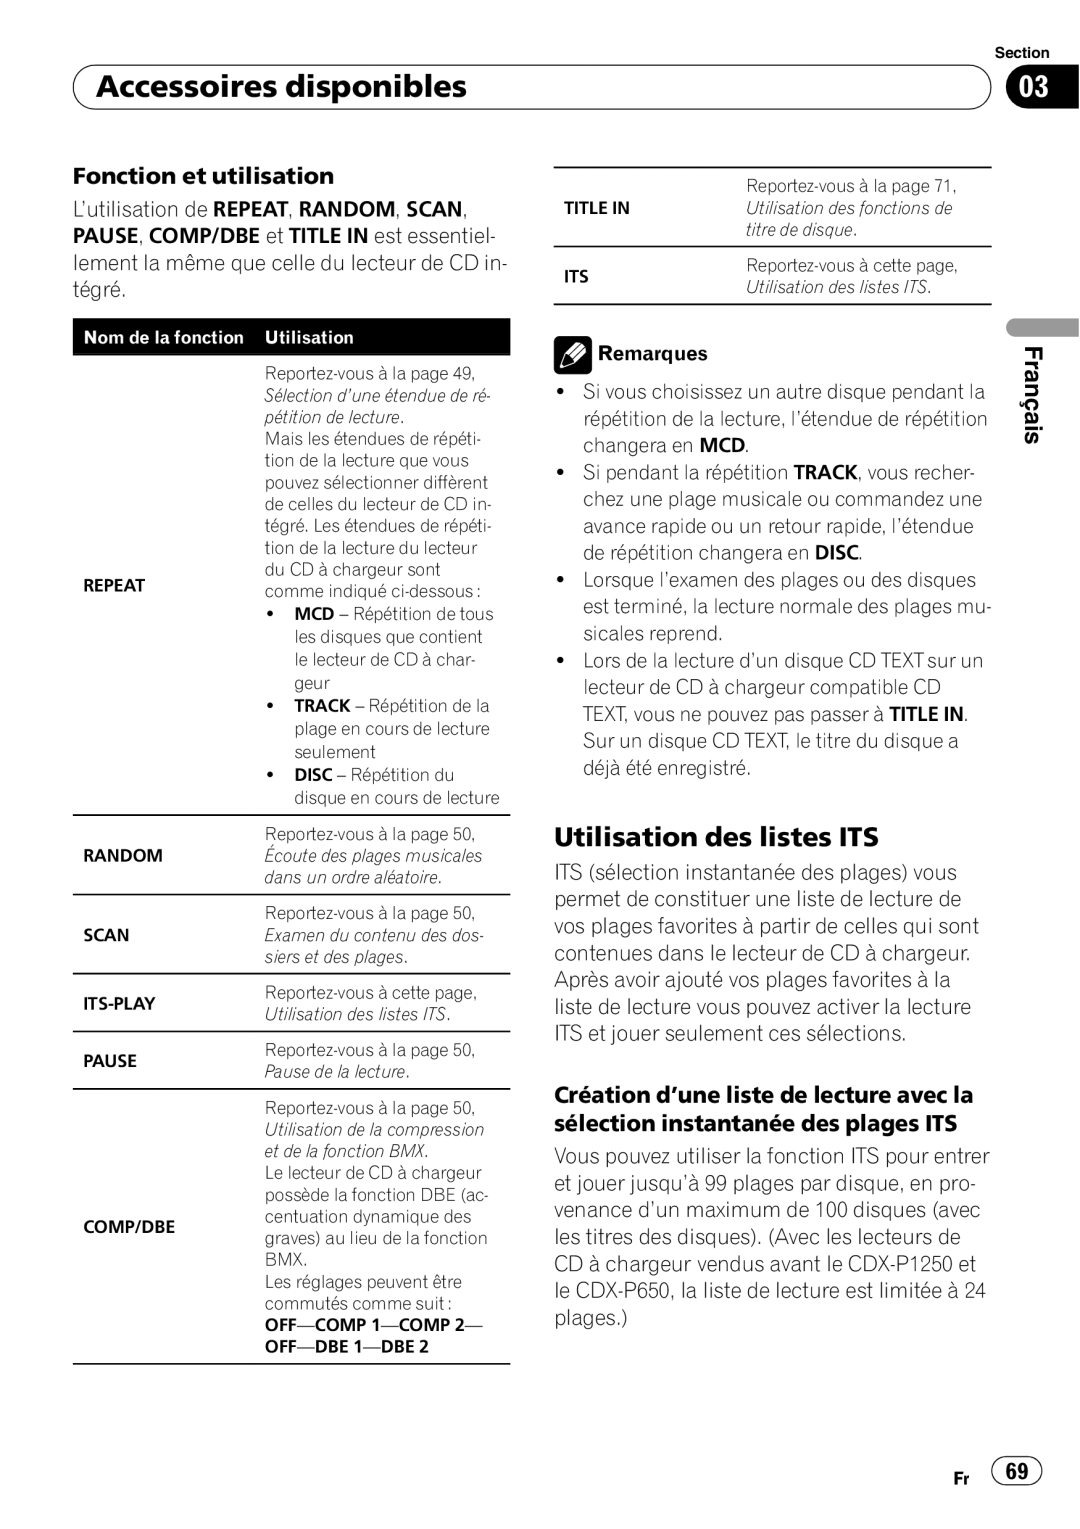 Pioneer SRC7127-B/N operation manual Utilisation des listes ITS, Accessoires disponibles, Français, Fonction et utilisation 